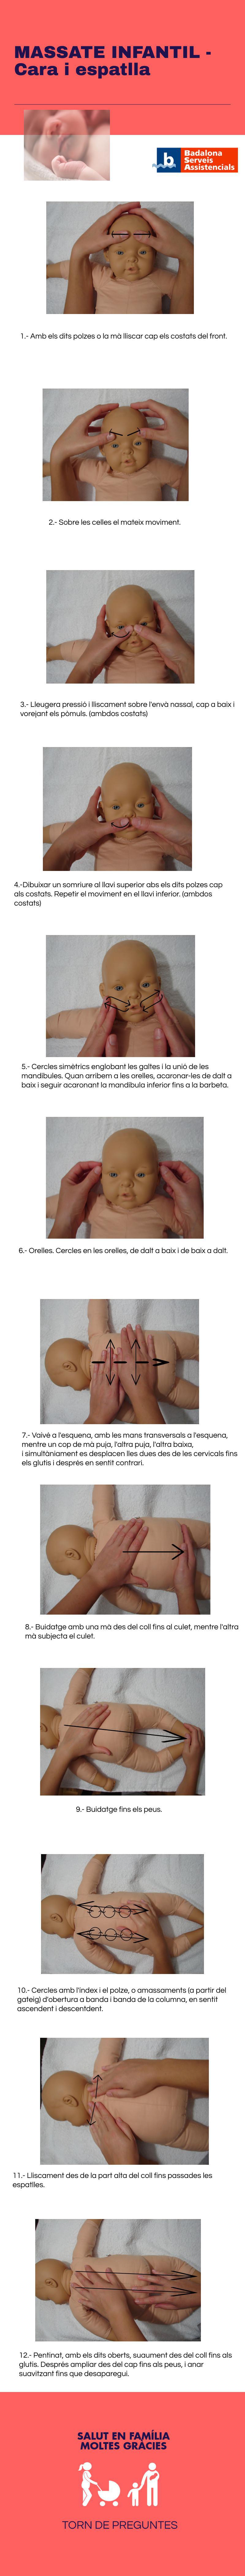 MASSATGE INFANTIL - CARA I ESPATLLA